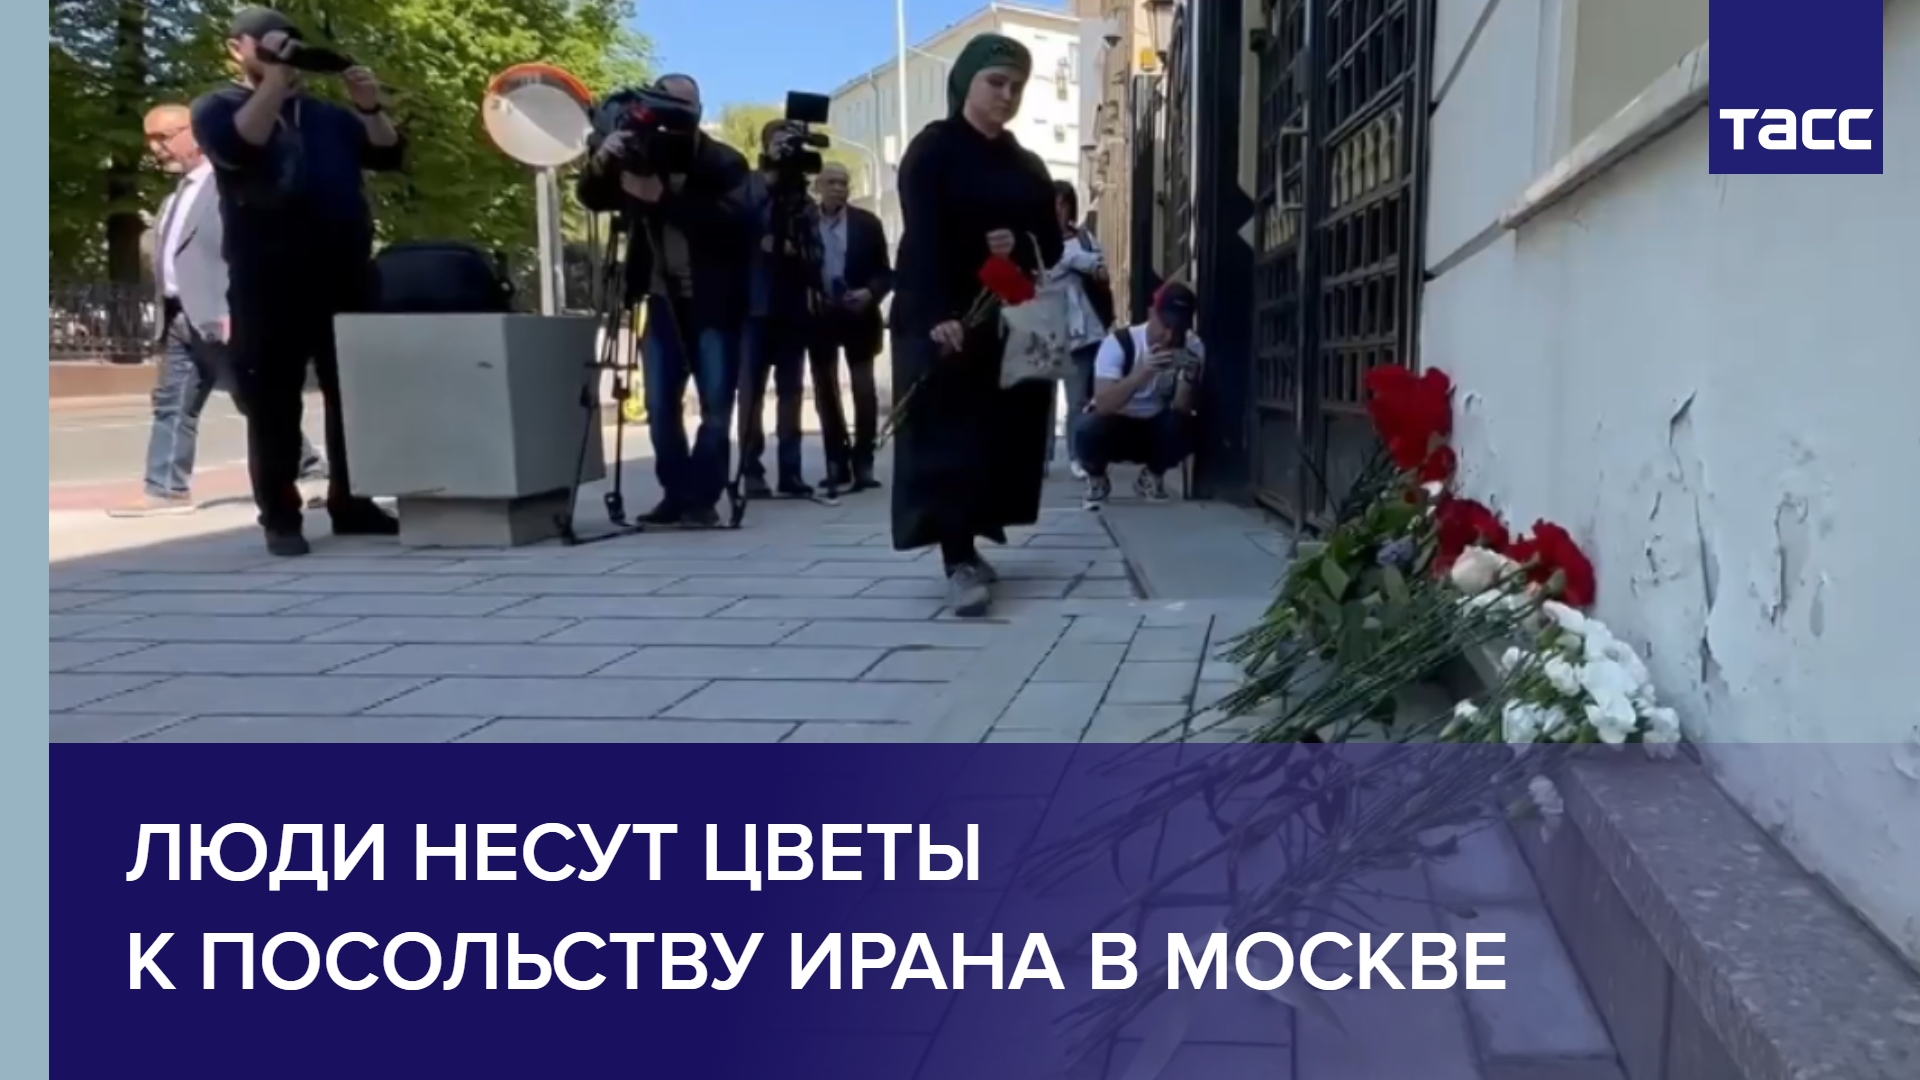 Люди несут цветы к посольству Ирана в Москве